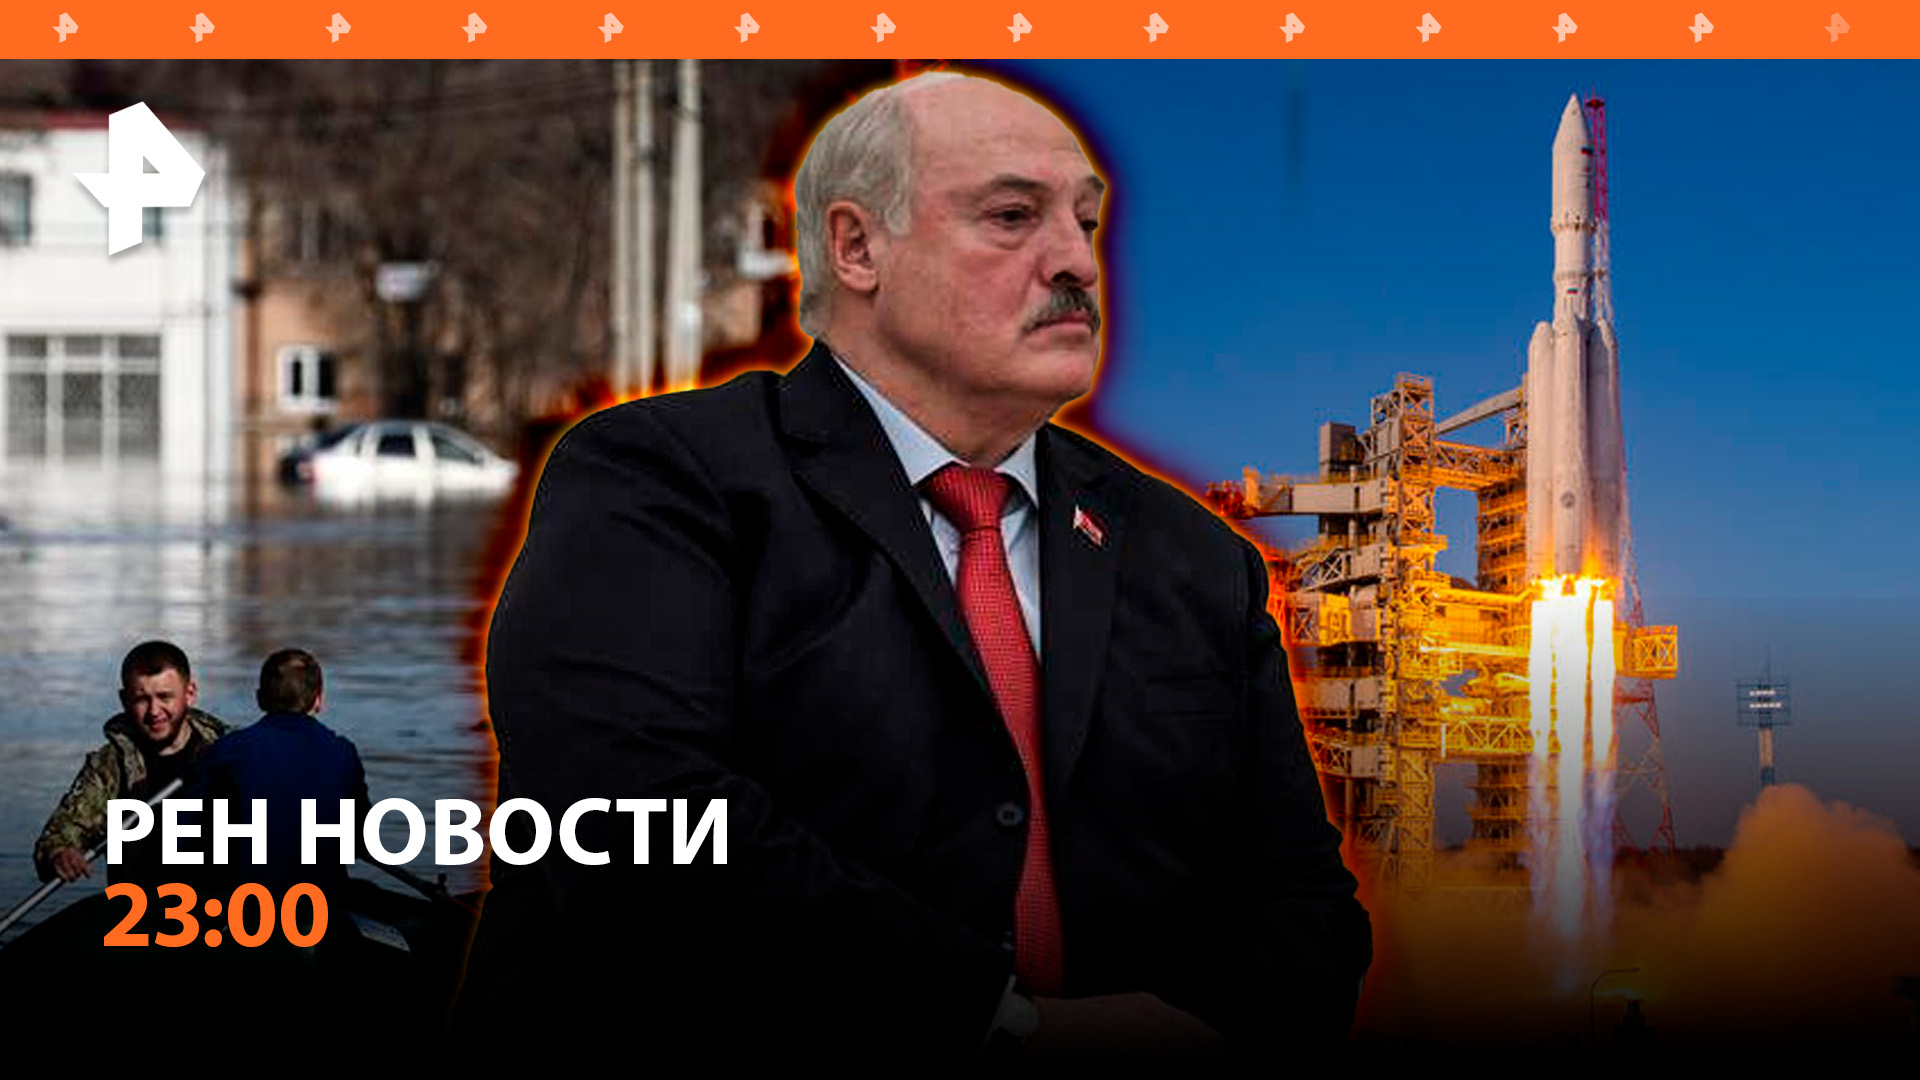 Встреча Путина и Лукашенко: главное / Пуск "Ангары" / Уровень воды в Оренбурге / РЕН НОВОСТИ 23:00